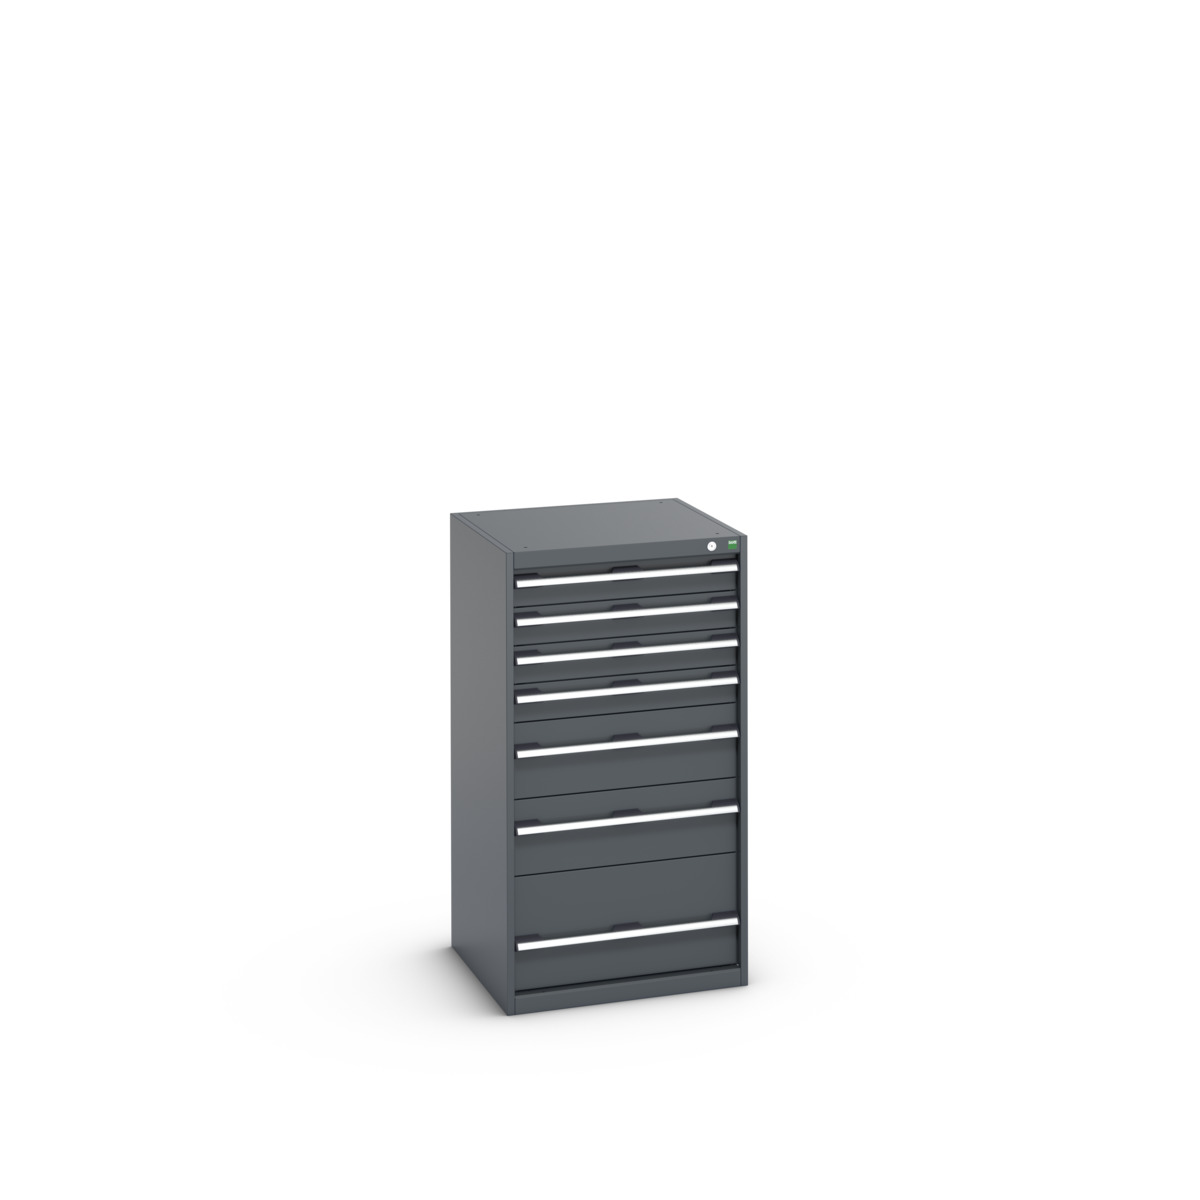 40019069.77V - cubio drawer cabinet